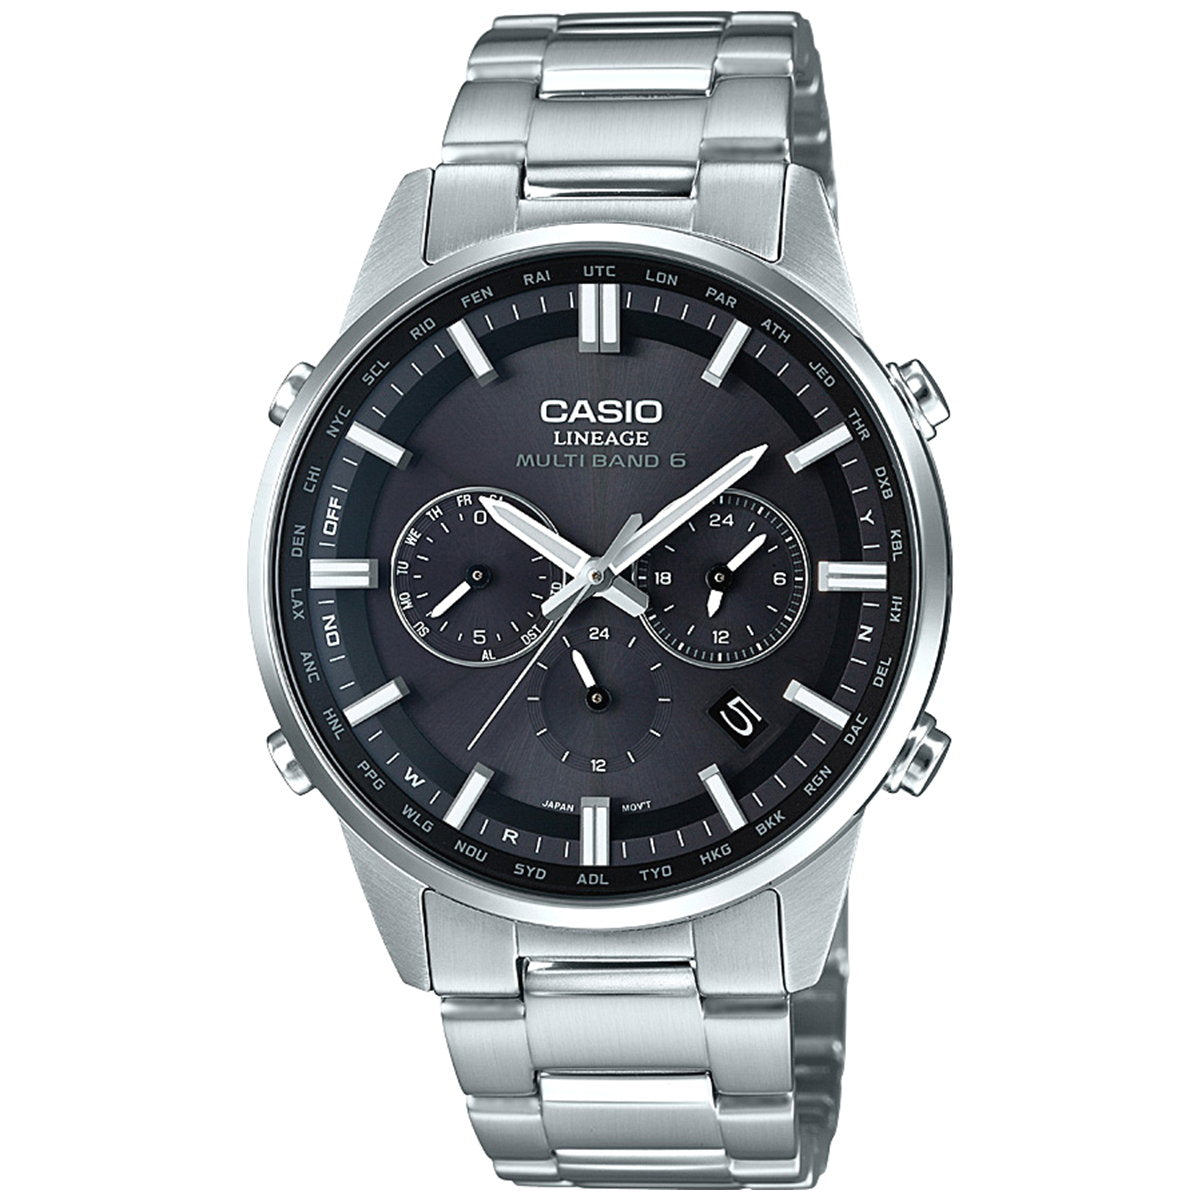 カシオ リニエージ CASIO LINEAGE 電波 ソーラー 電波時計 腕時計 メンズ アナログ タフソーラー LIW-M700D-1AJF